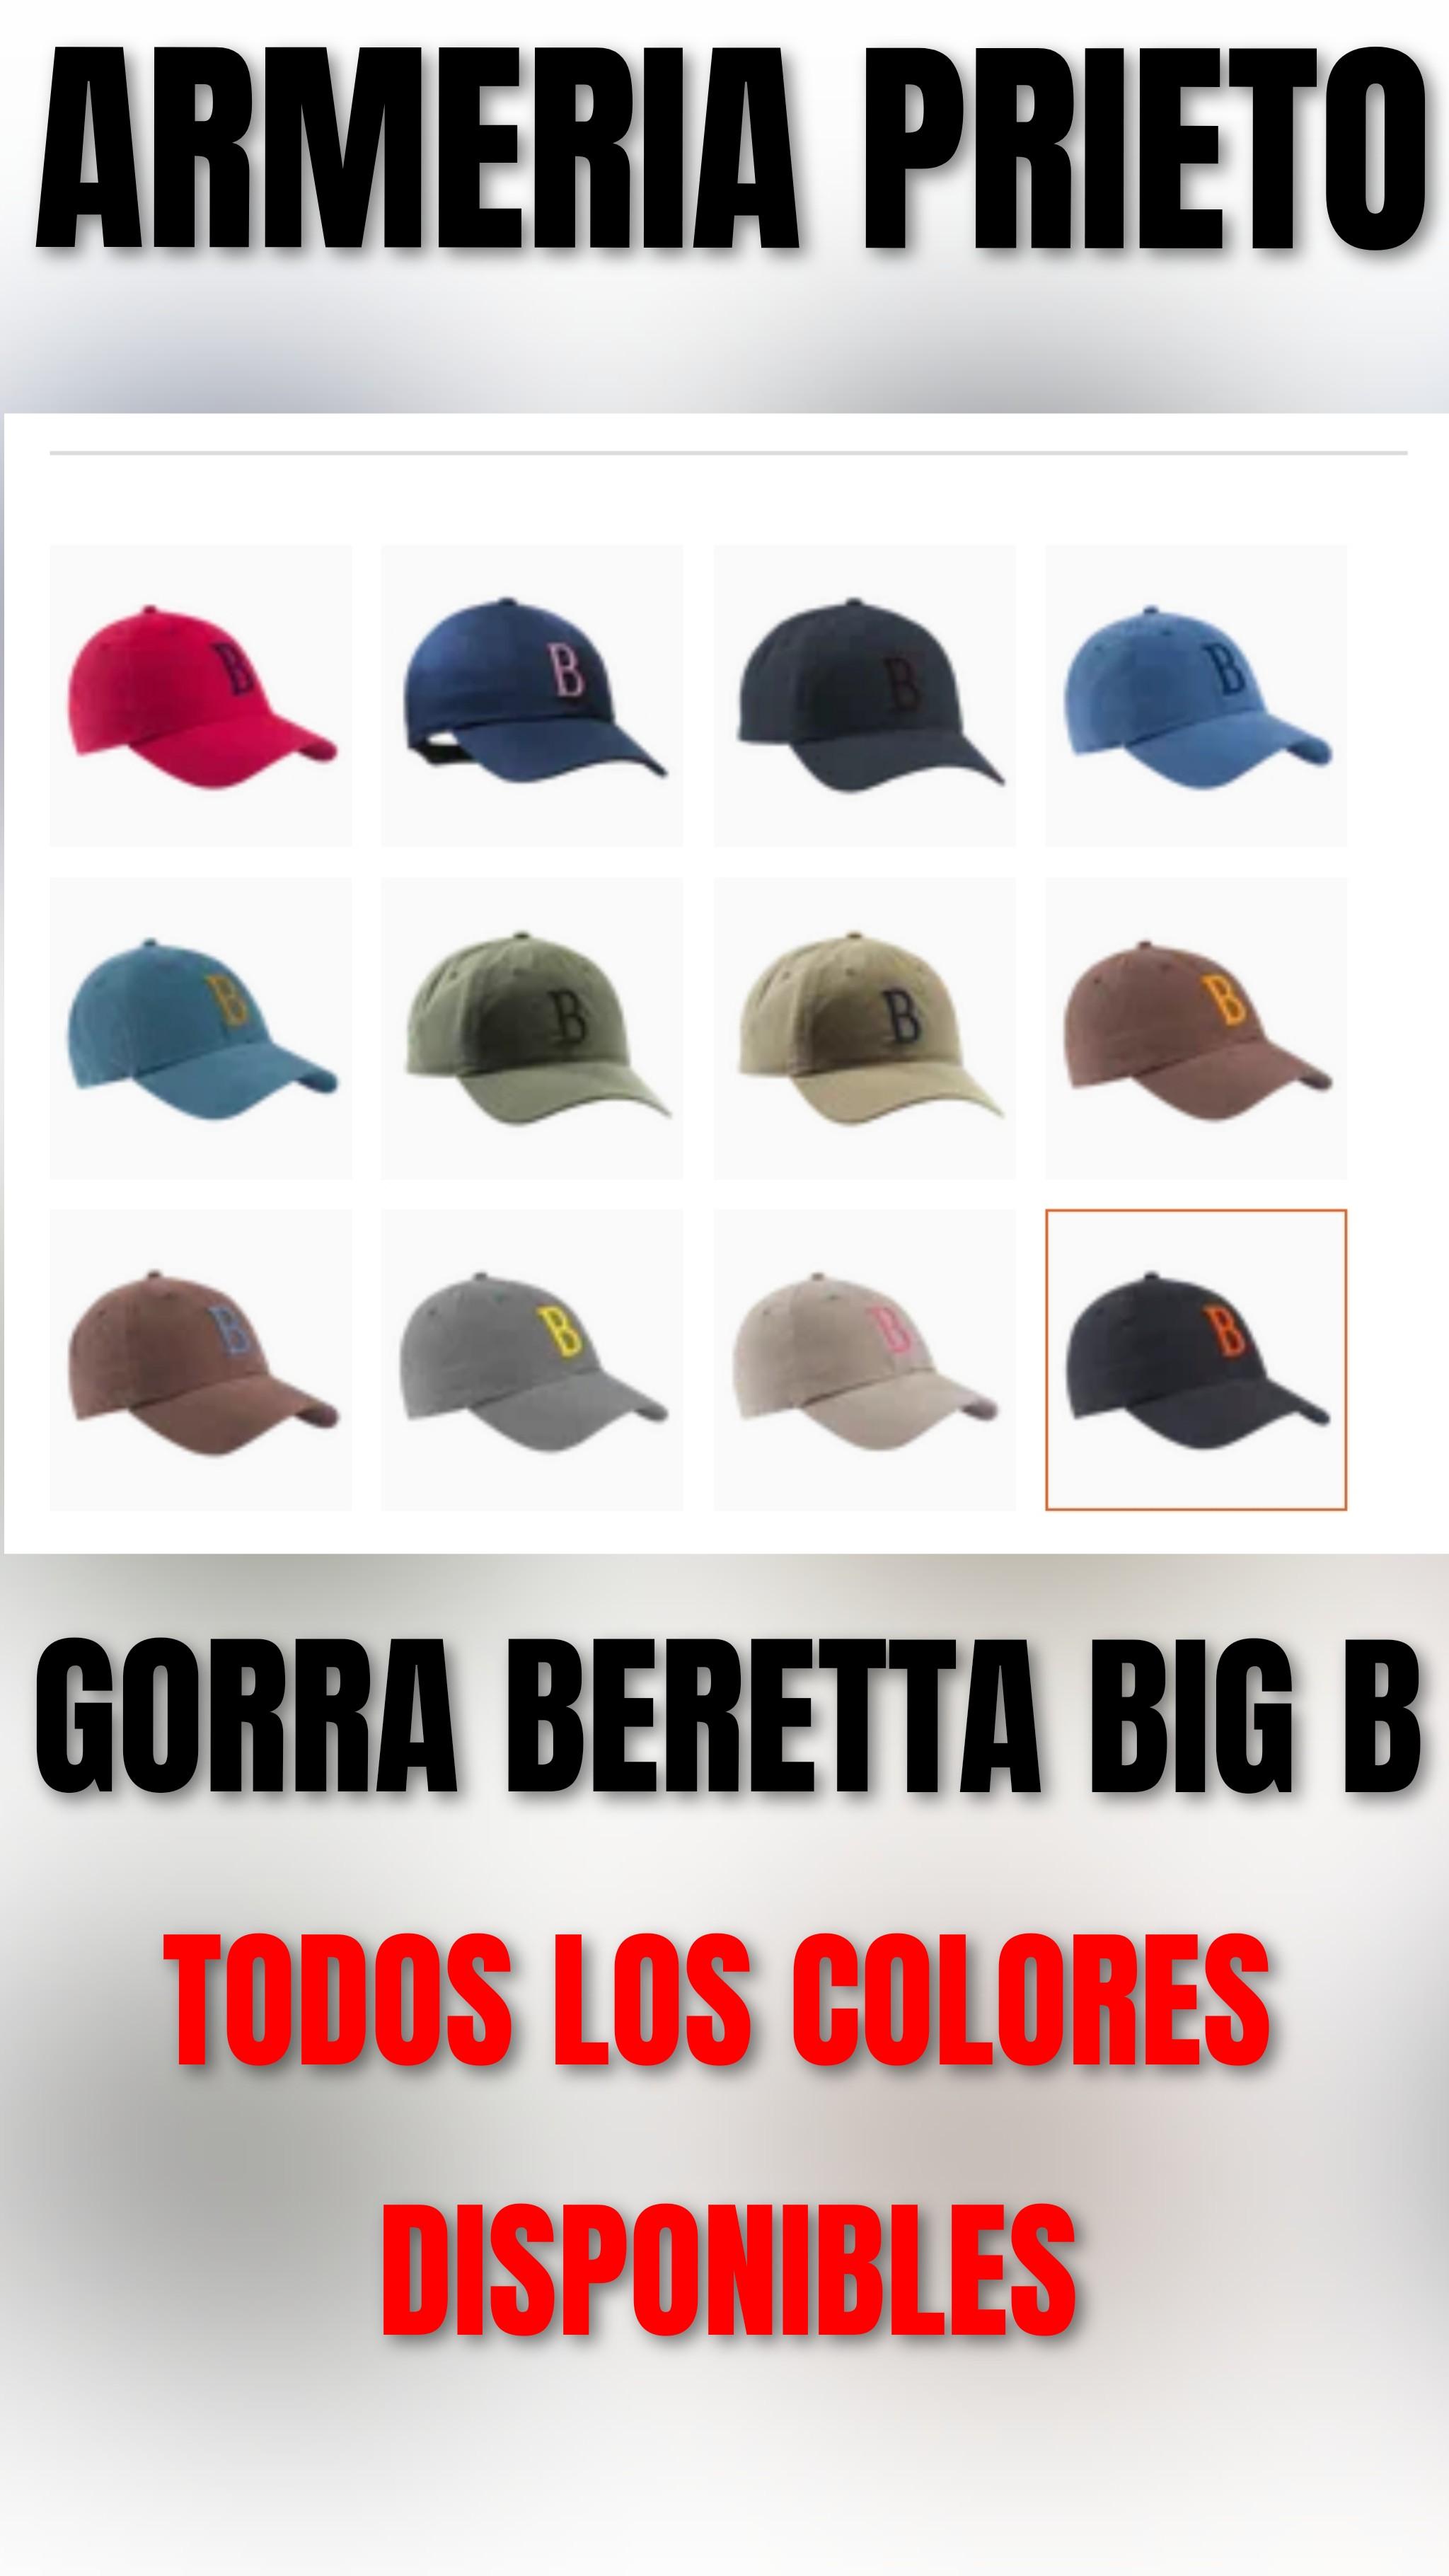 GORRA BERETTA BIG B